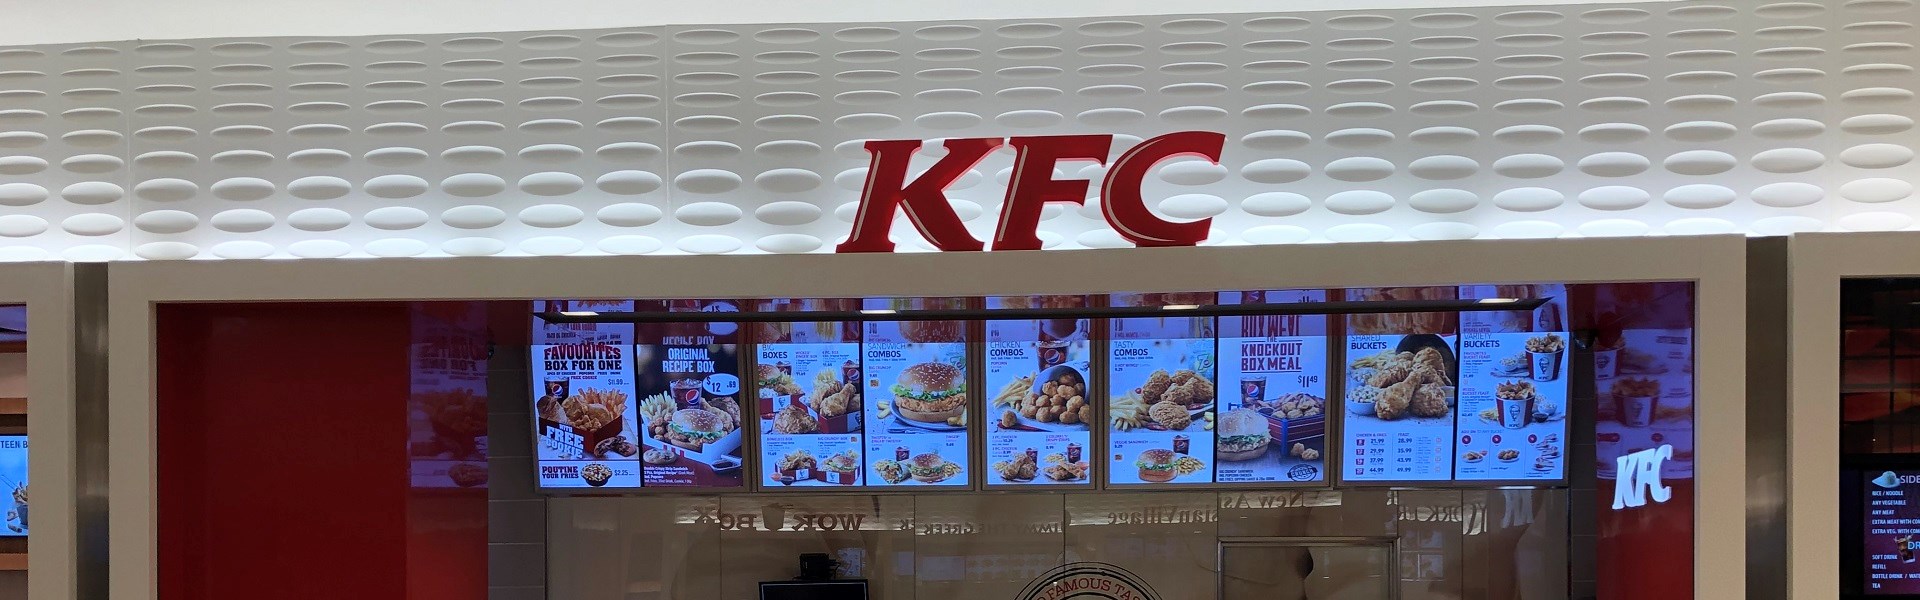 KFC - Phase III